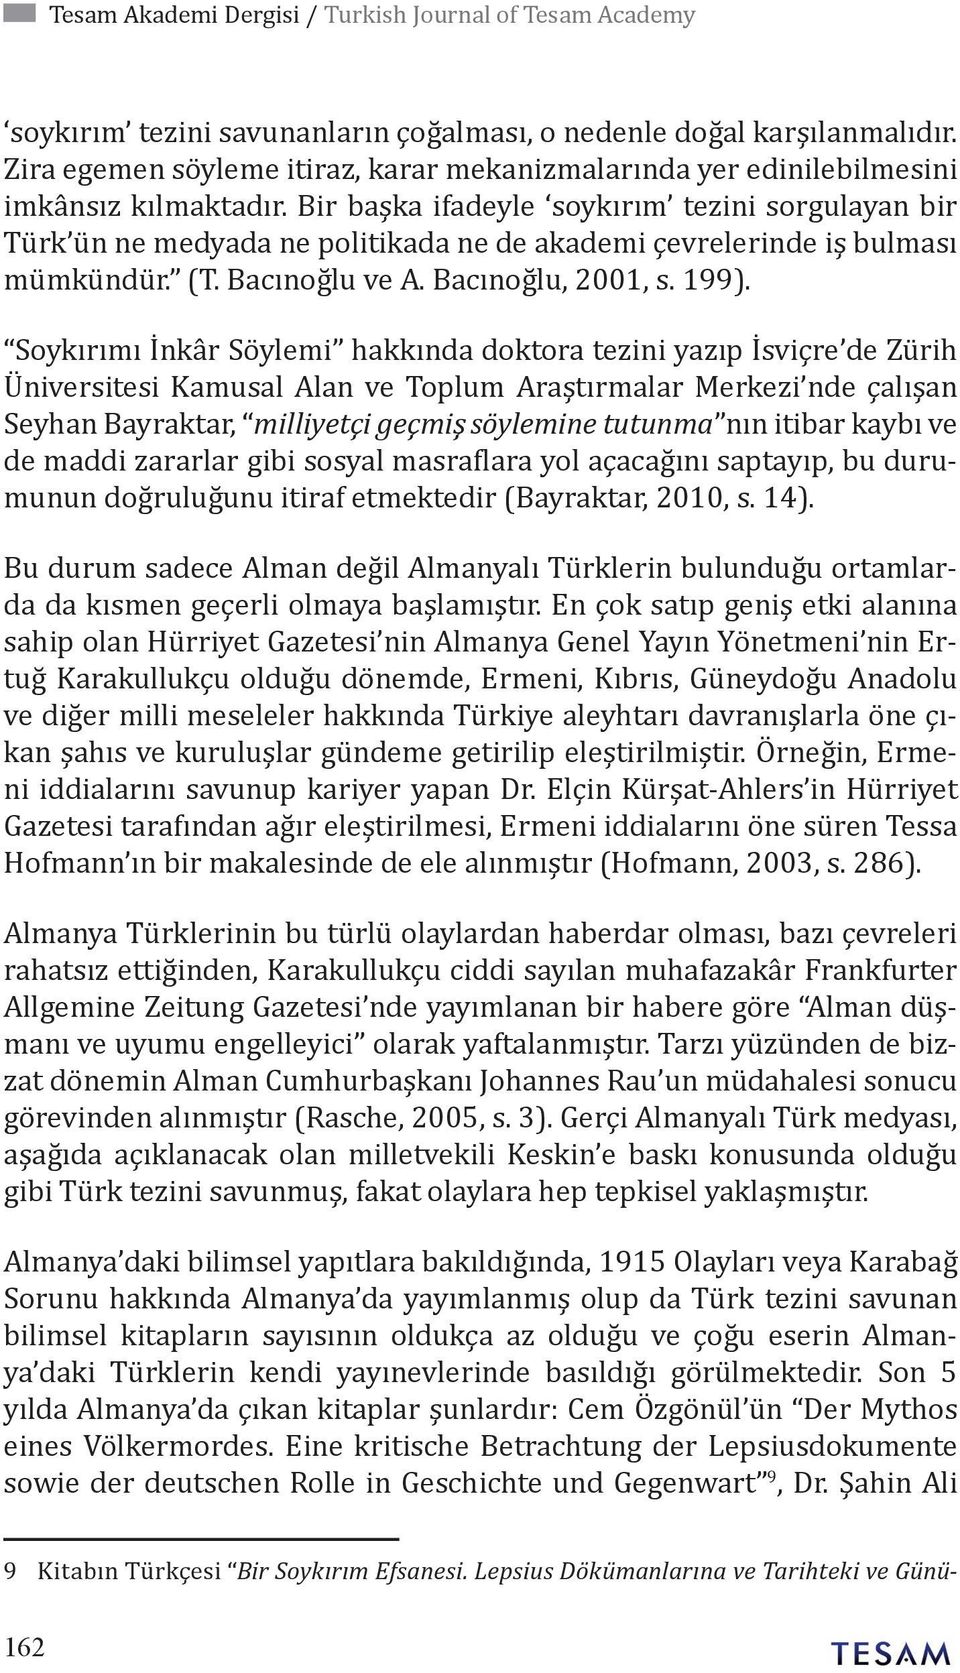 Bir başka ifadeyle soykırım tezini sorgulayan bir Türk ün ne medyada ne politikada ne de akademi çevrelerinde iş bulması mümkündür. (T. Bacınoğlu ve A. Bacınoğlu, 2001, s. 199).